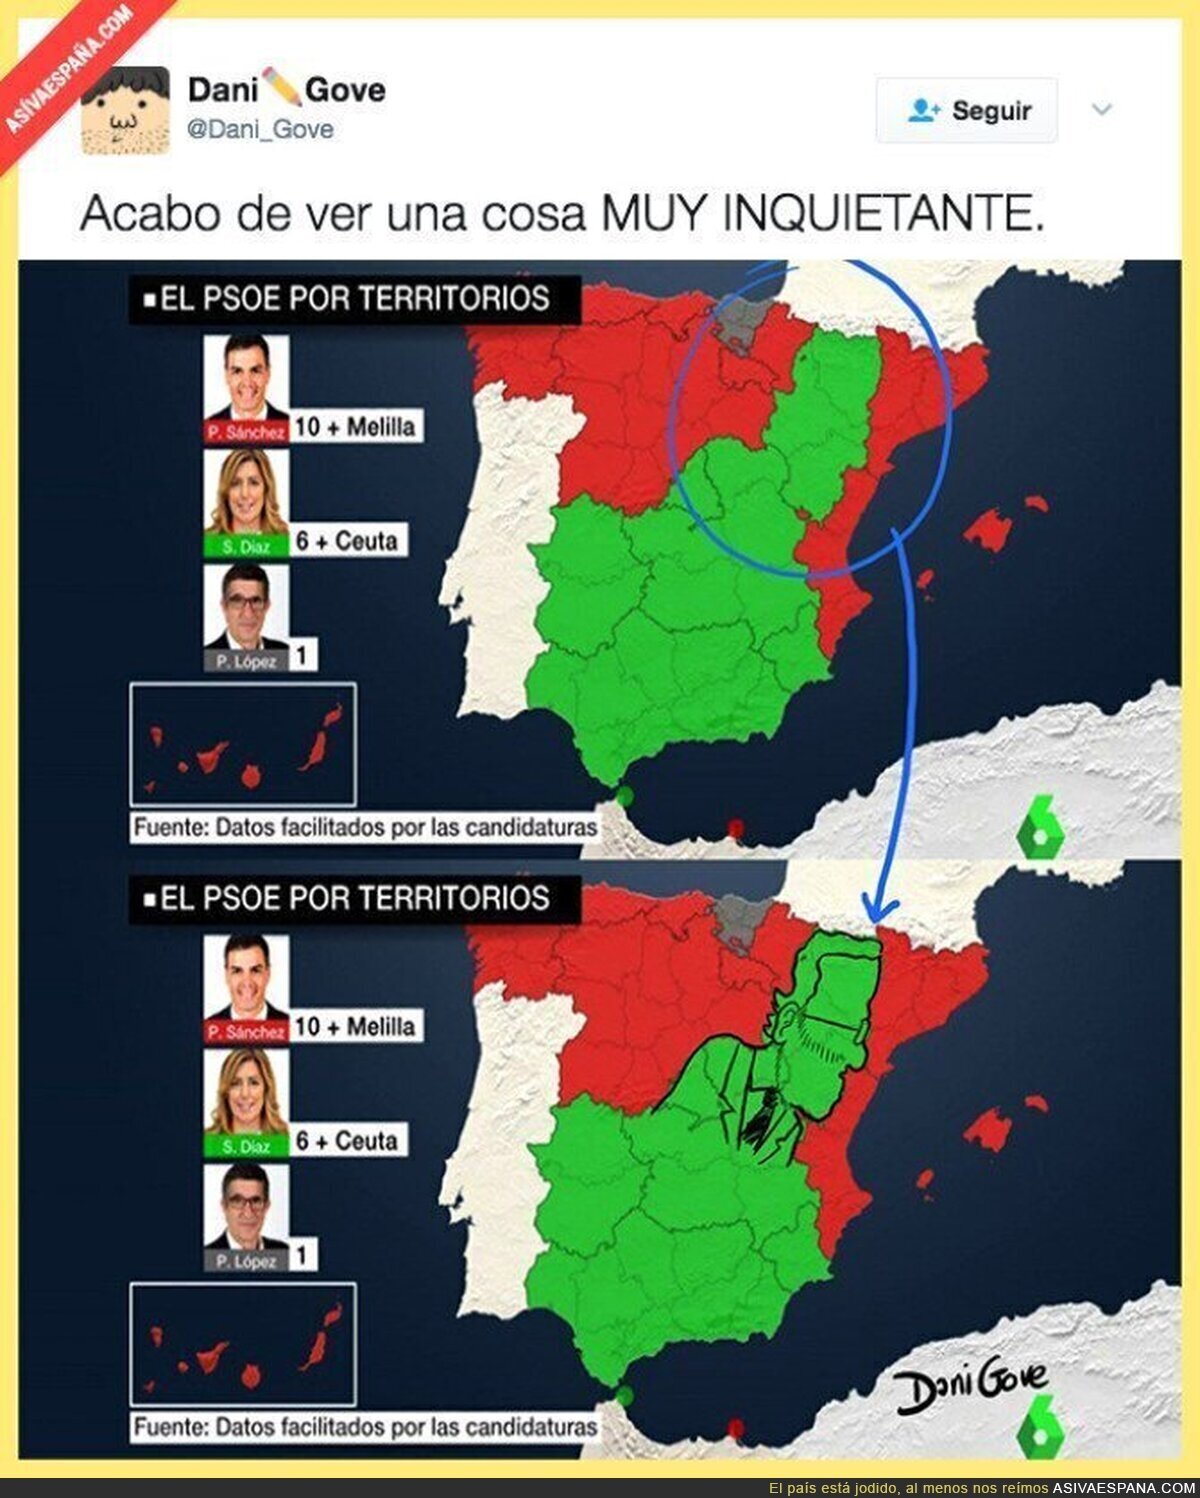 OJO: Las zonas en las que gana Susana Díaz con el PSOE hace la silueta de Rajoy